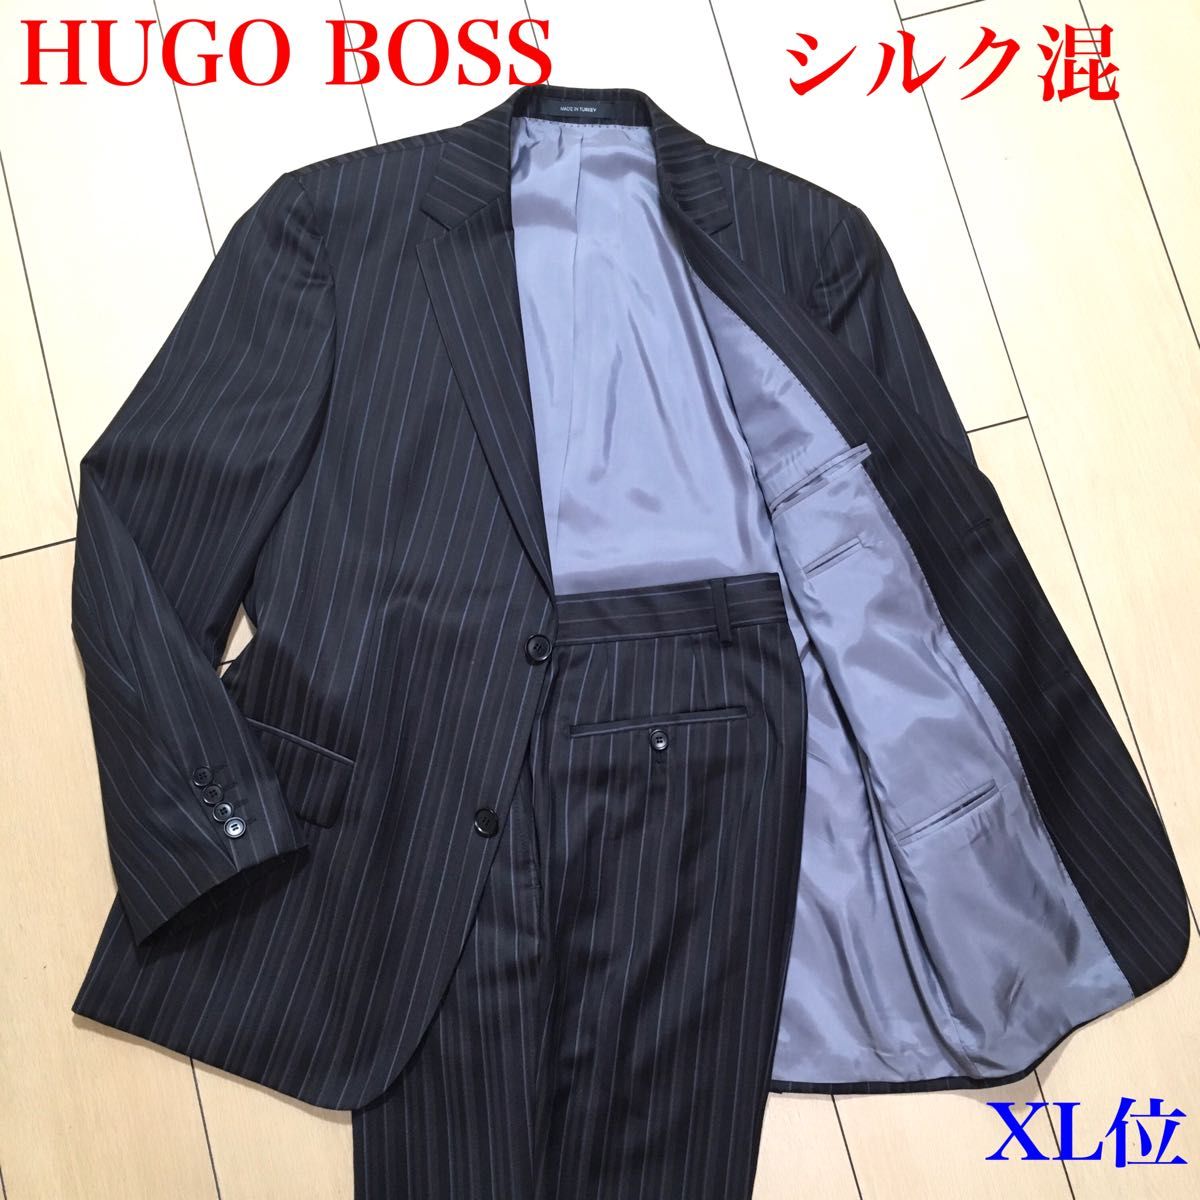 極美品 ヒューゴボス セットアップ スーツ シルク混 HUGO BOSS